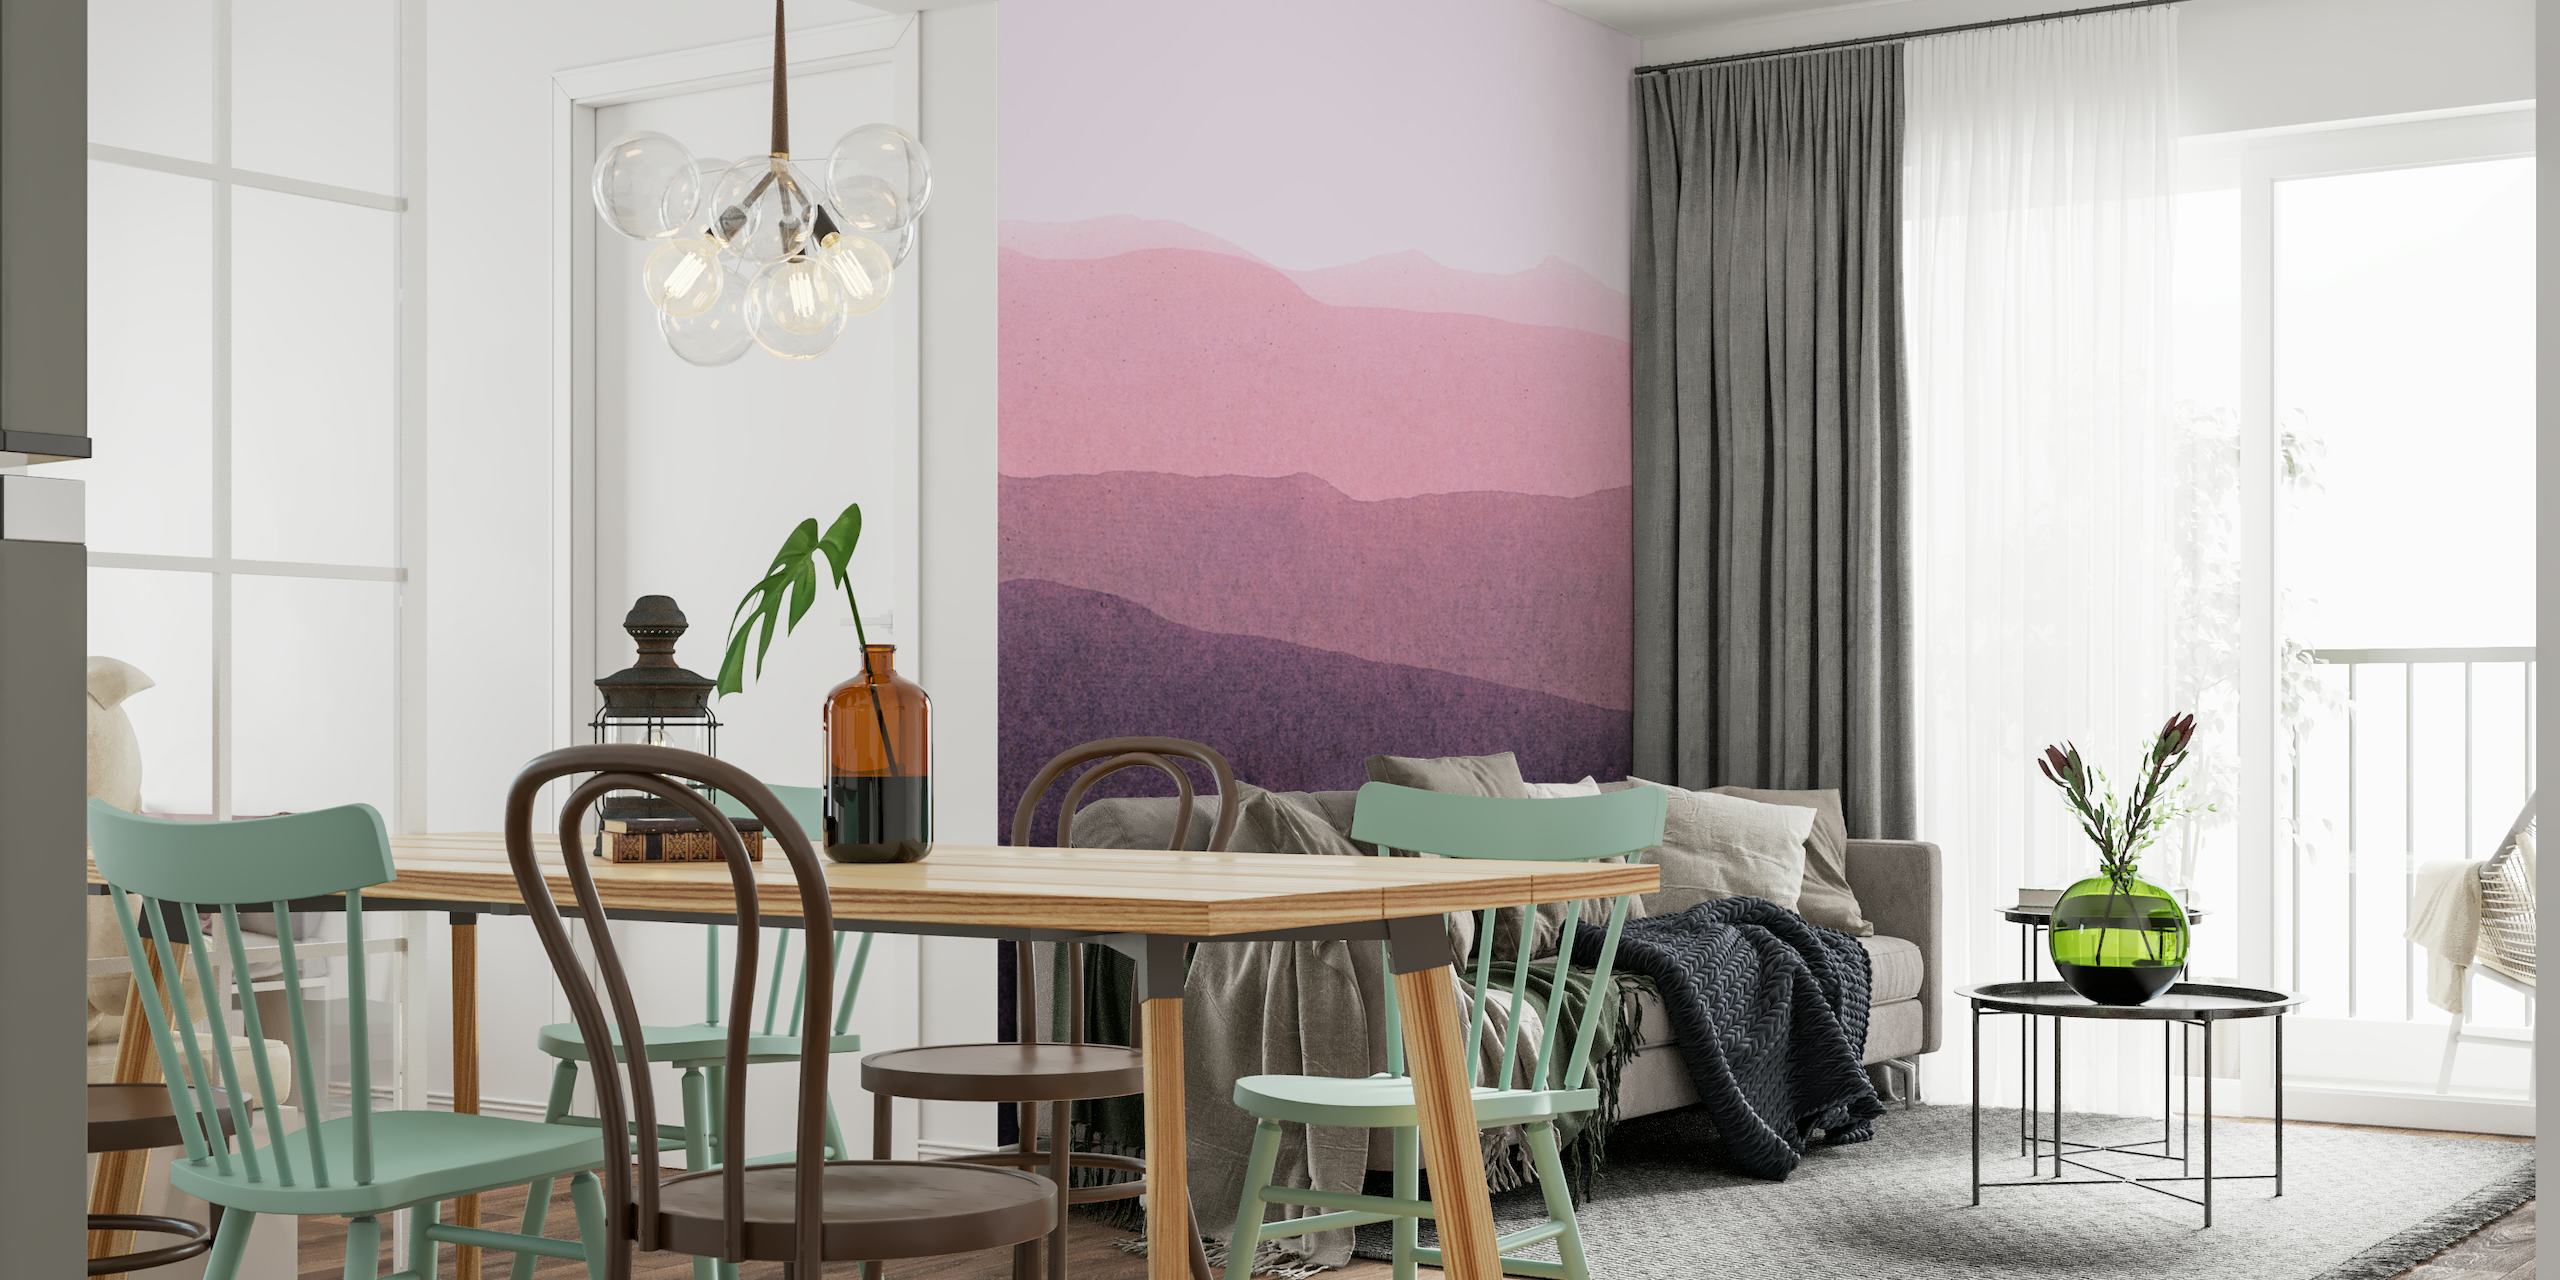 Um mural de parede mostrando uma paisagem serena em gradiente com colinas sobrepostas em tons de rosa escuro a roxo profundo